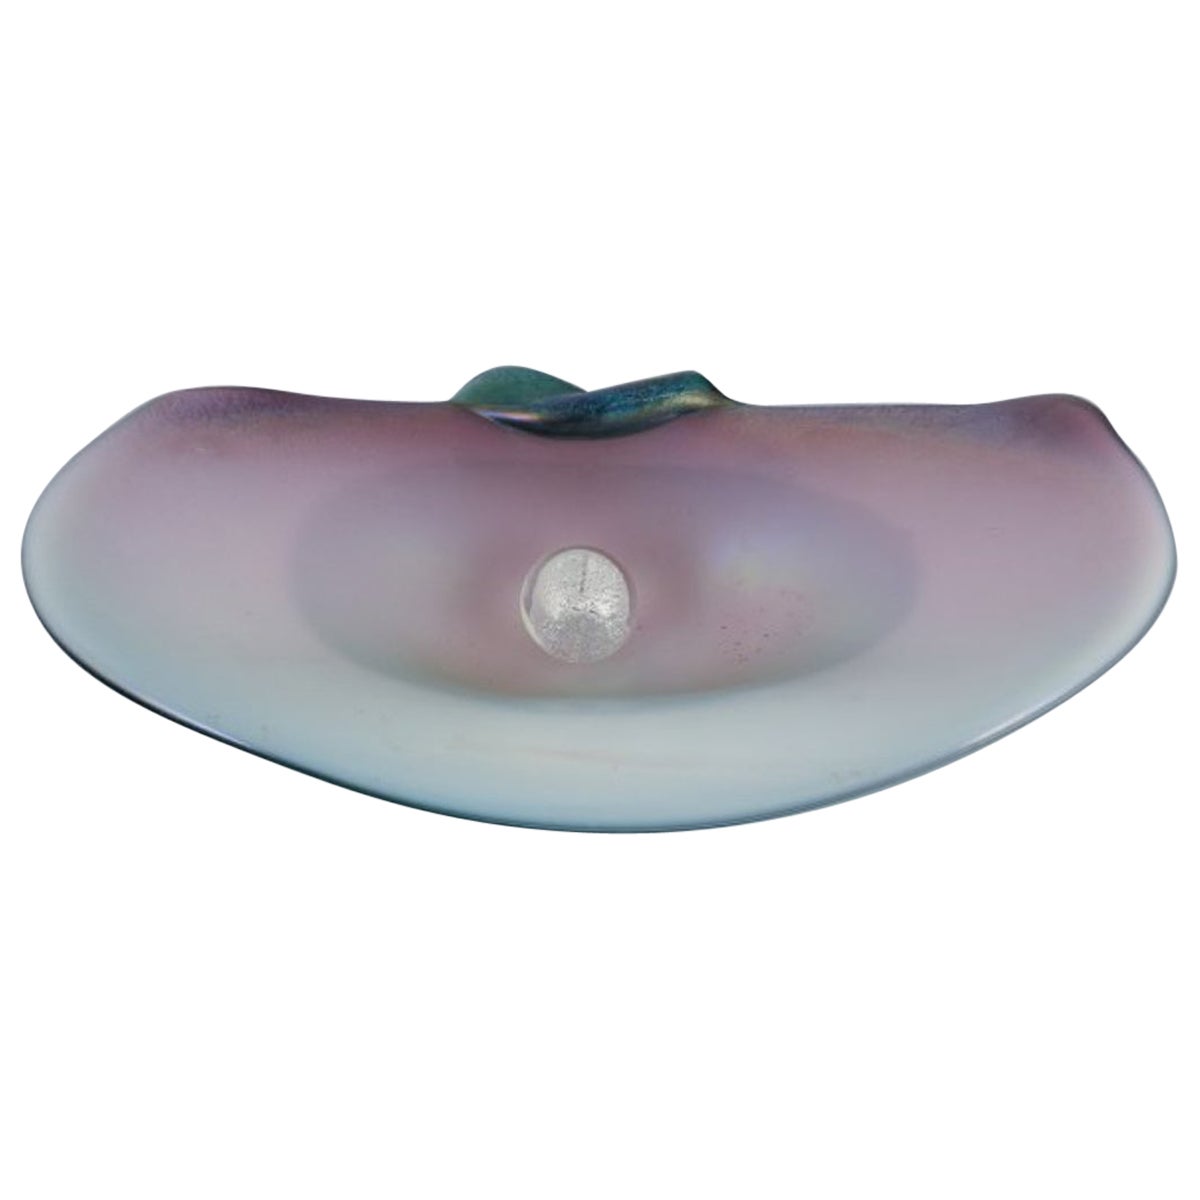 Valentino for Murano, Italy. Rare art glass bowl shaped like a seashell